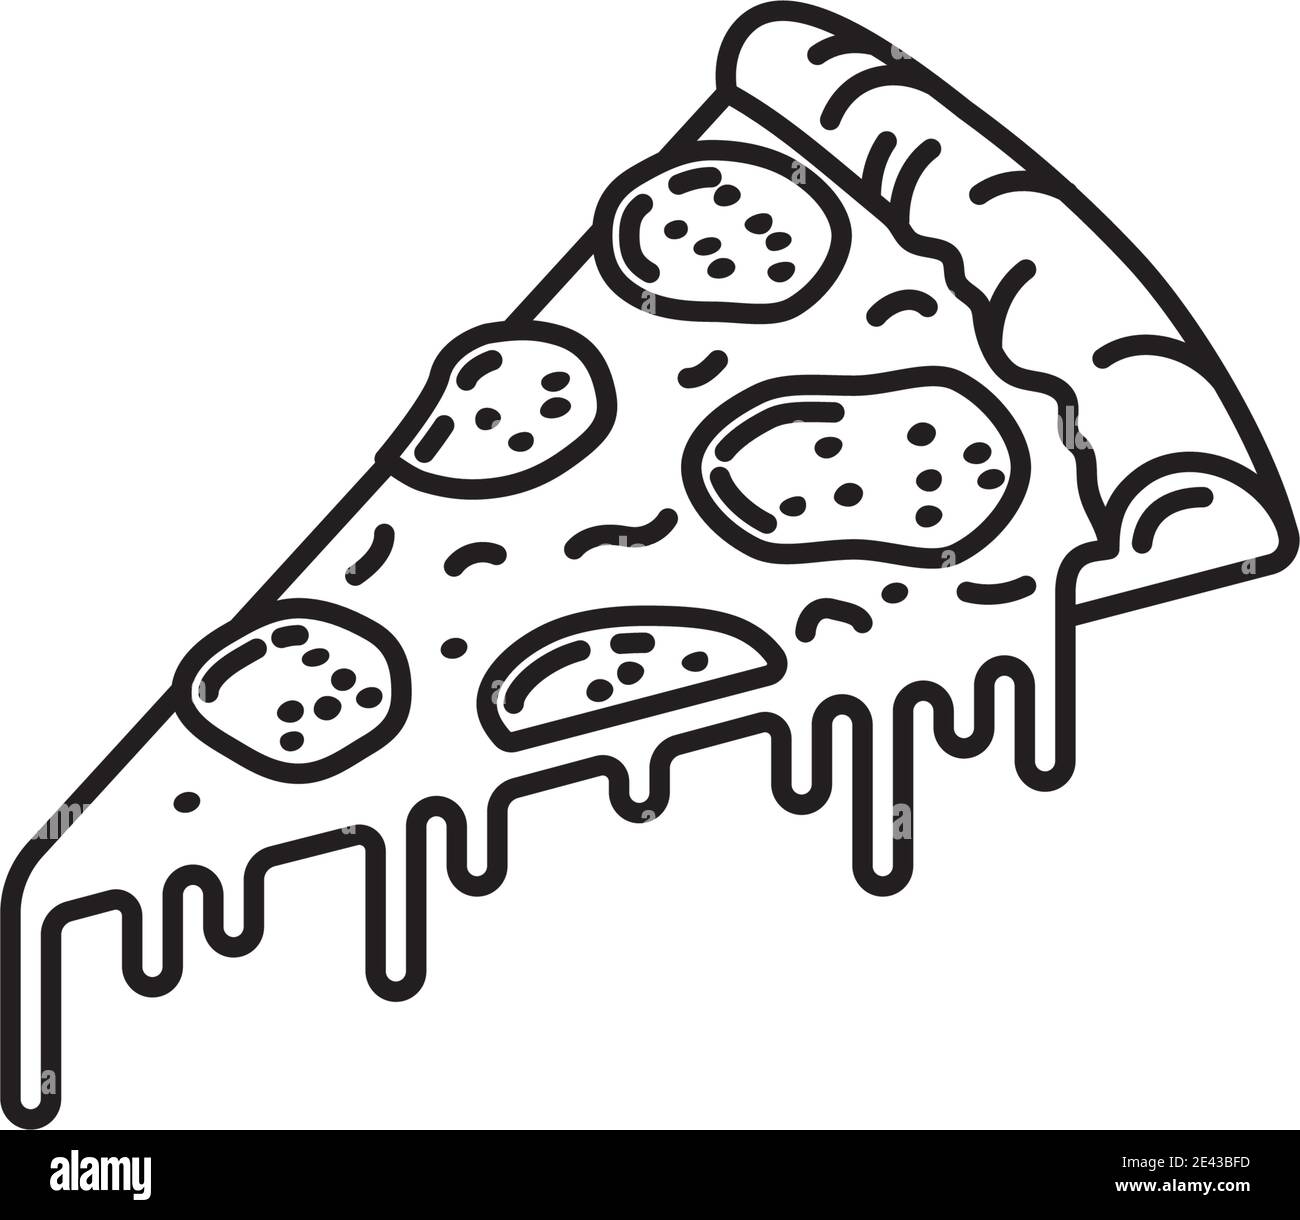 Une tranche de Pepperoni Pizza, icône de la ligne vectorielle, pour la fête de la pizza de Pepperoni, le 20 septembre. Illustration de Vecteur